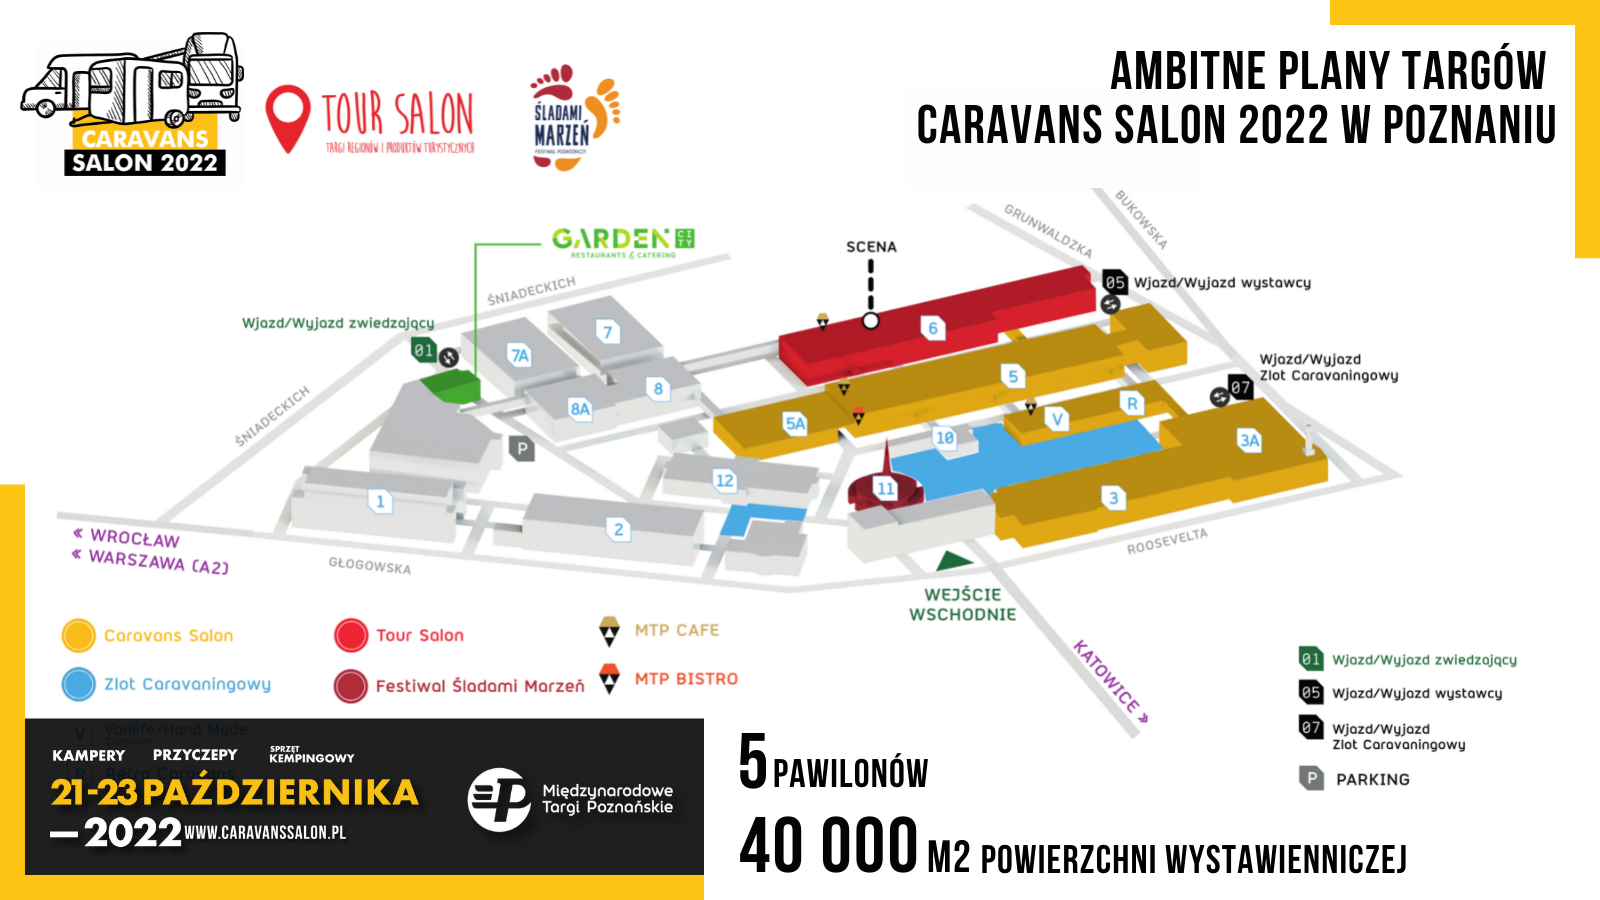 Ambitious plans for Caravans Salon Poland 2022 in Poznań – image 2